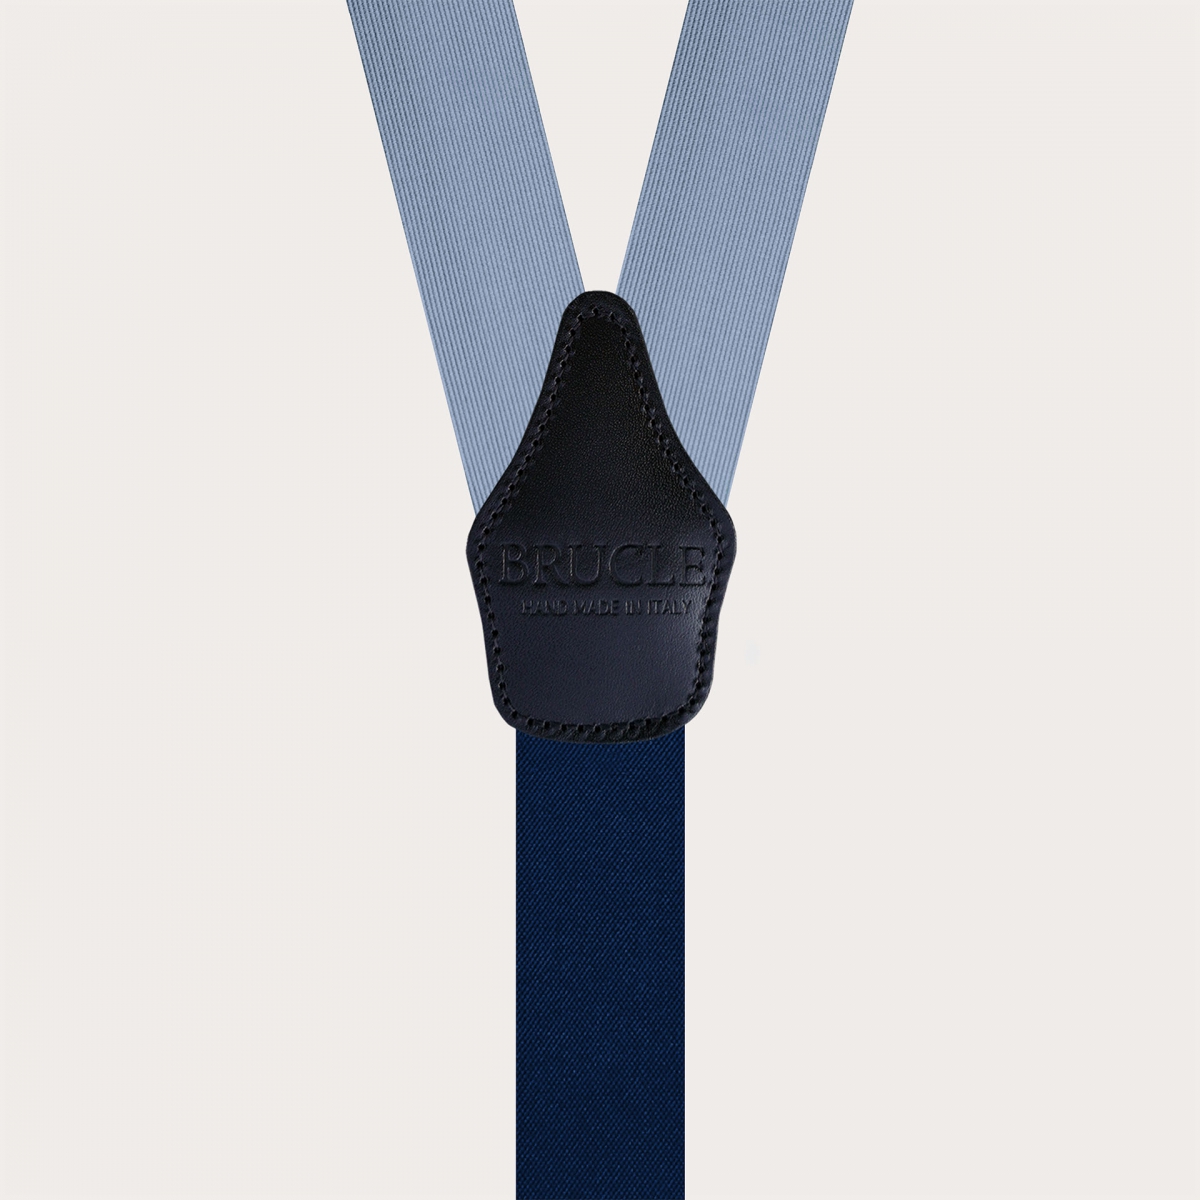 Silk Y-shape suspenders with braid runners, blue sky